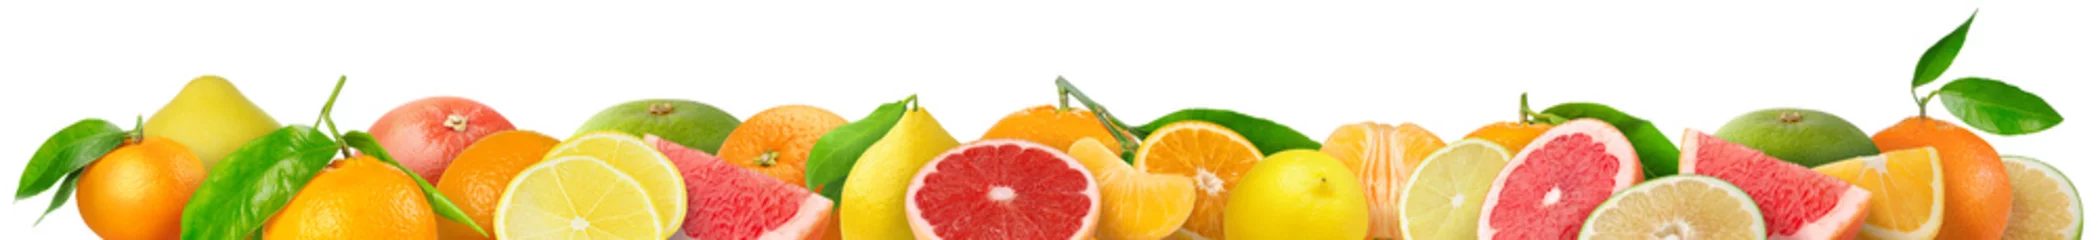 Deurstickers Gemengde citrusvruchten grens. Stapel sinaasappel, citroen, mandarijn, grapefruit en andere citrusvruchten in horizontale samenstelling geïsoleerd op witte achtergrond © ChaoticDesignStudio